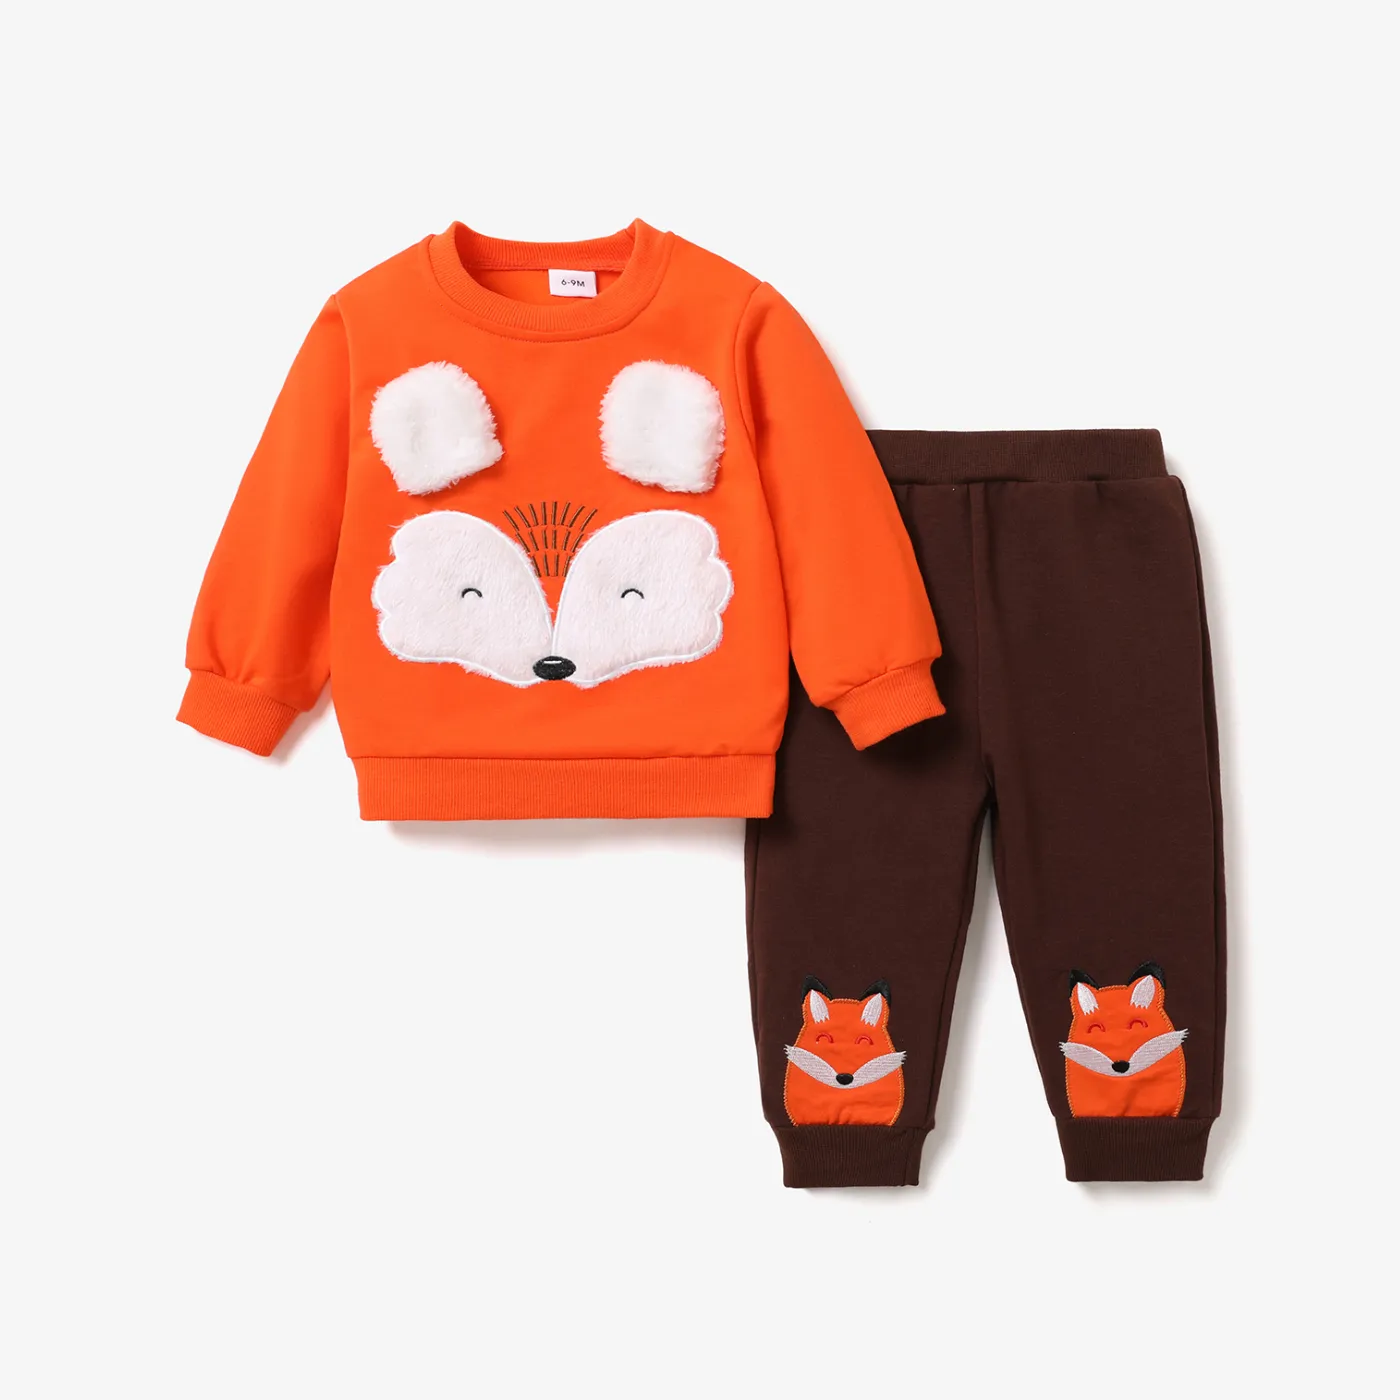 2 件裝男嬰卡通狐狸圖案橙色長袖運動衫和褲子套裝